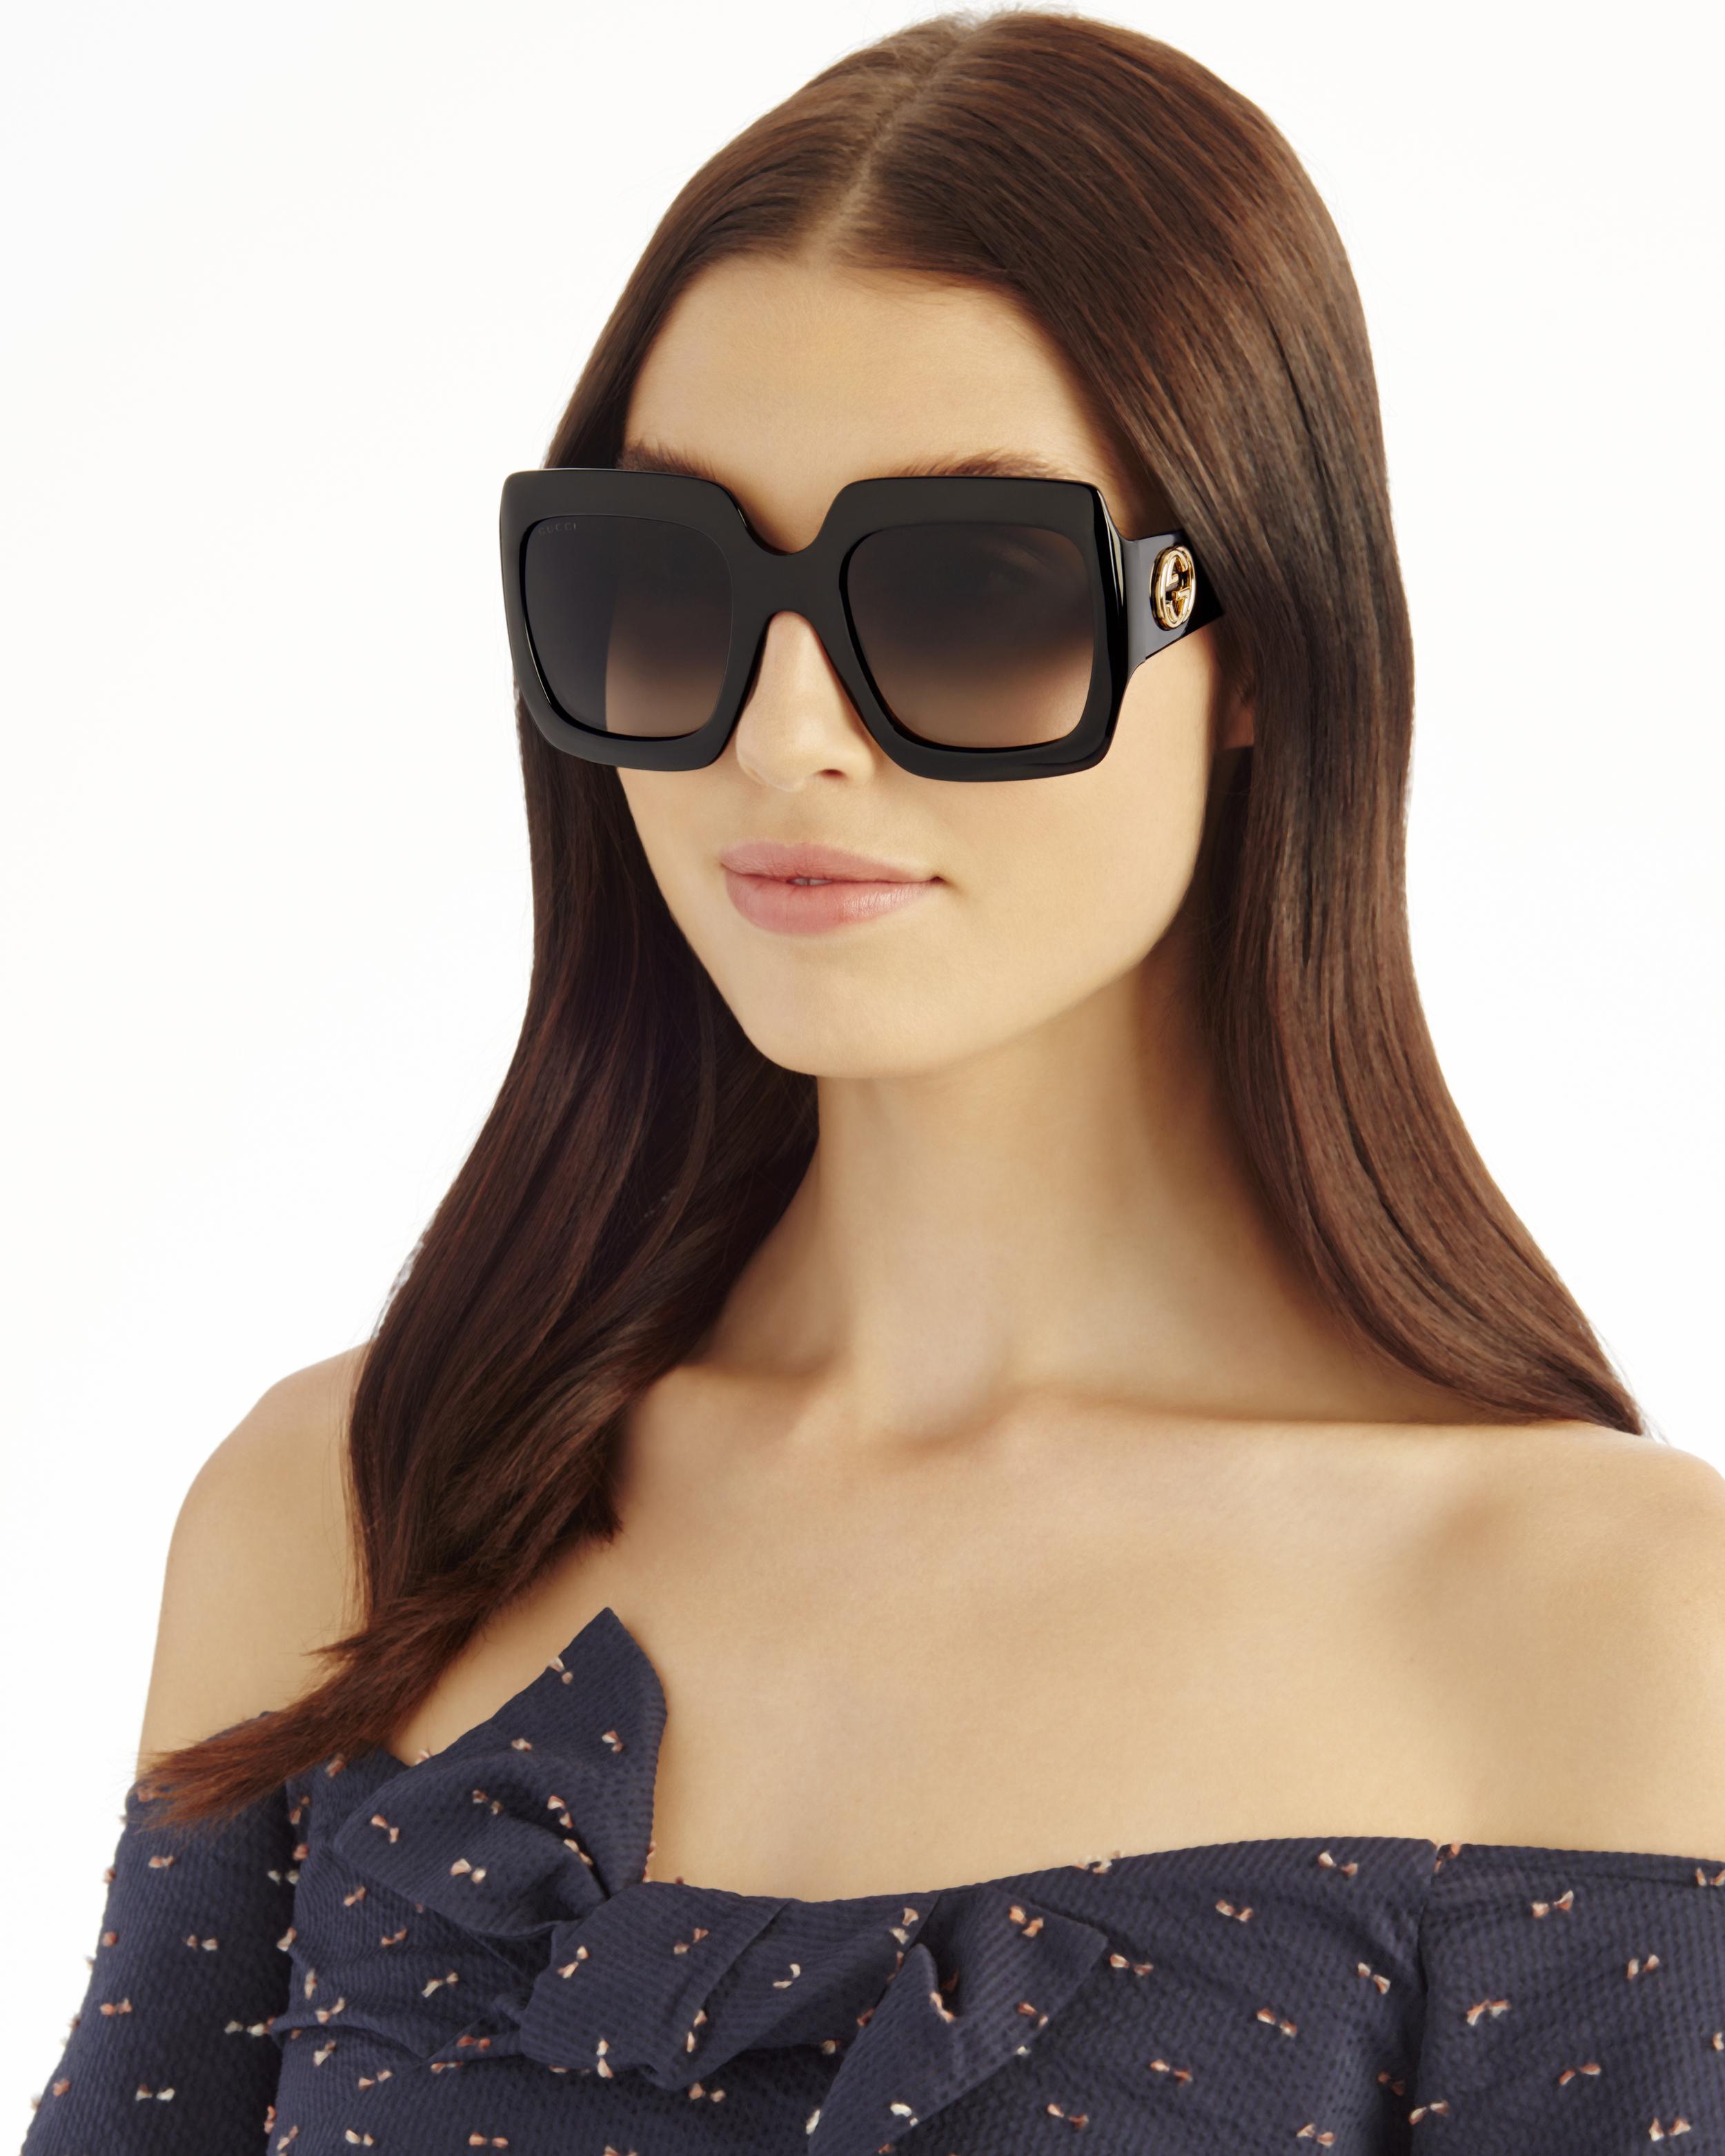 gucci black square sunglasses